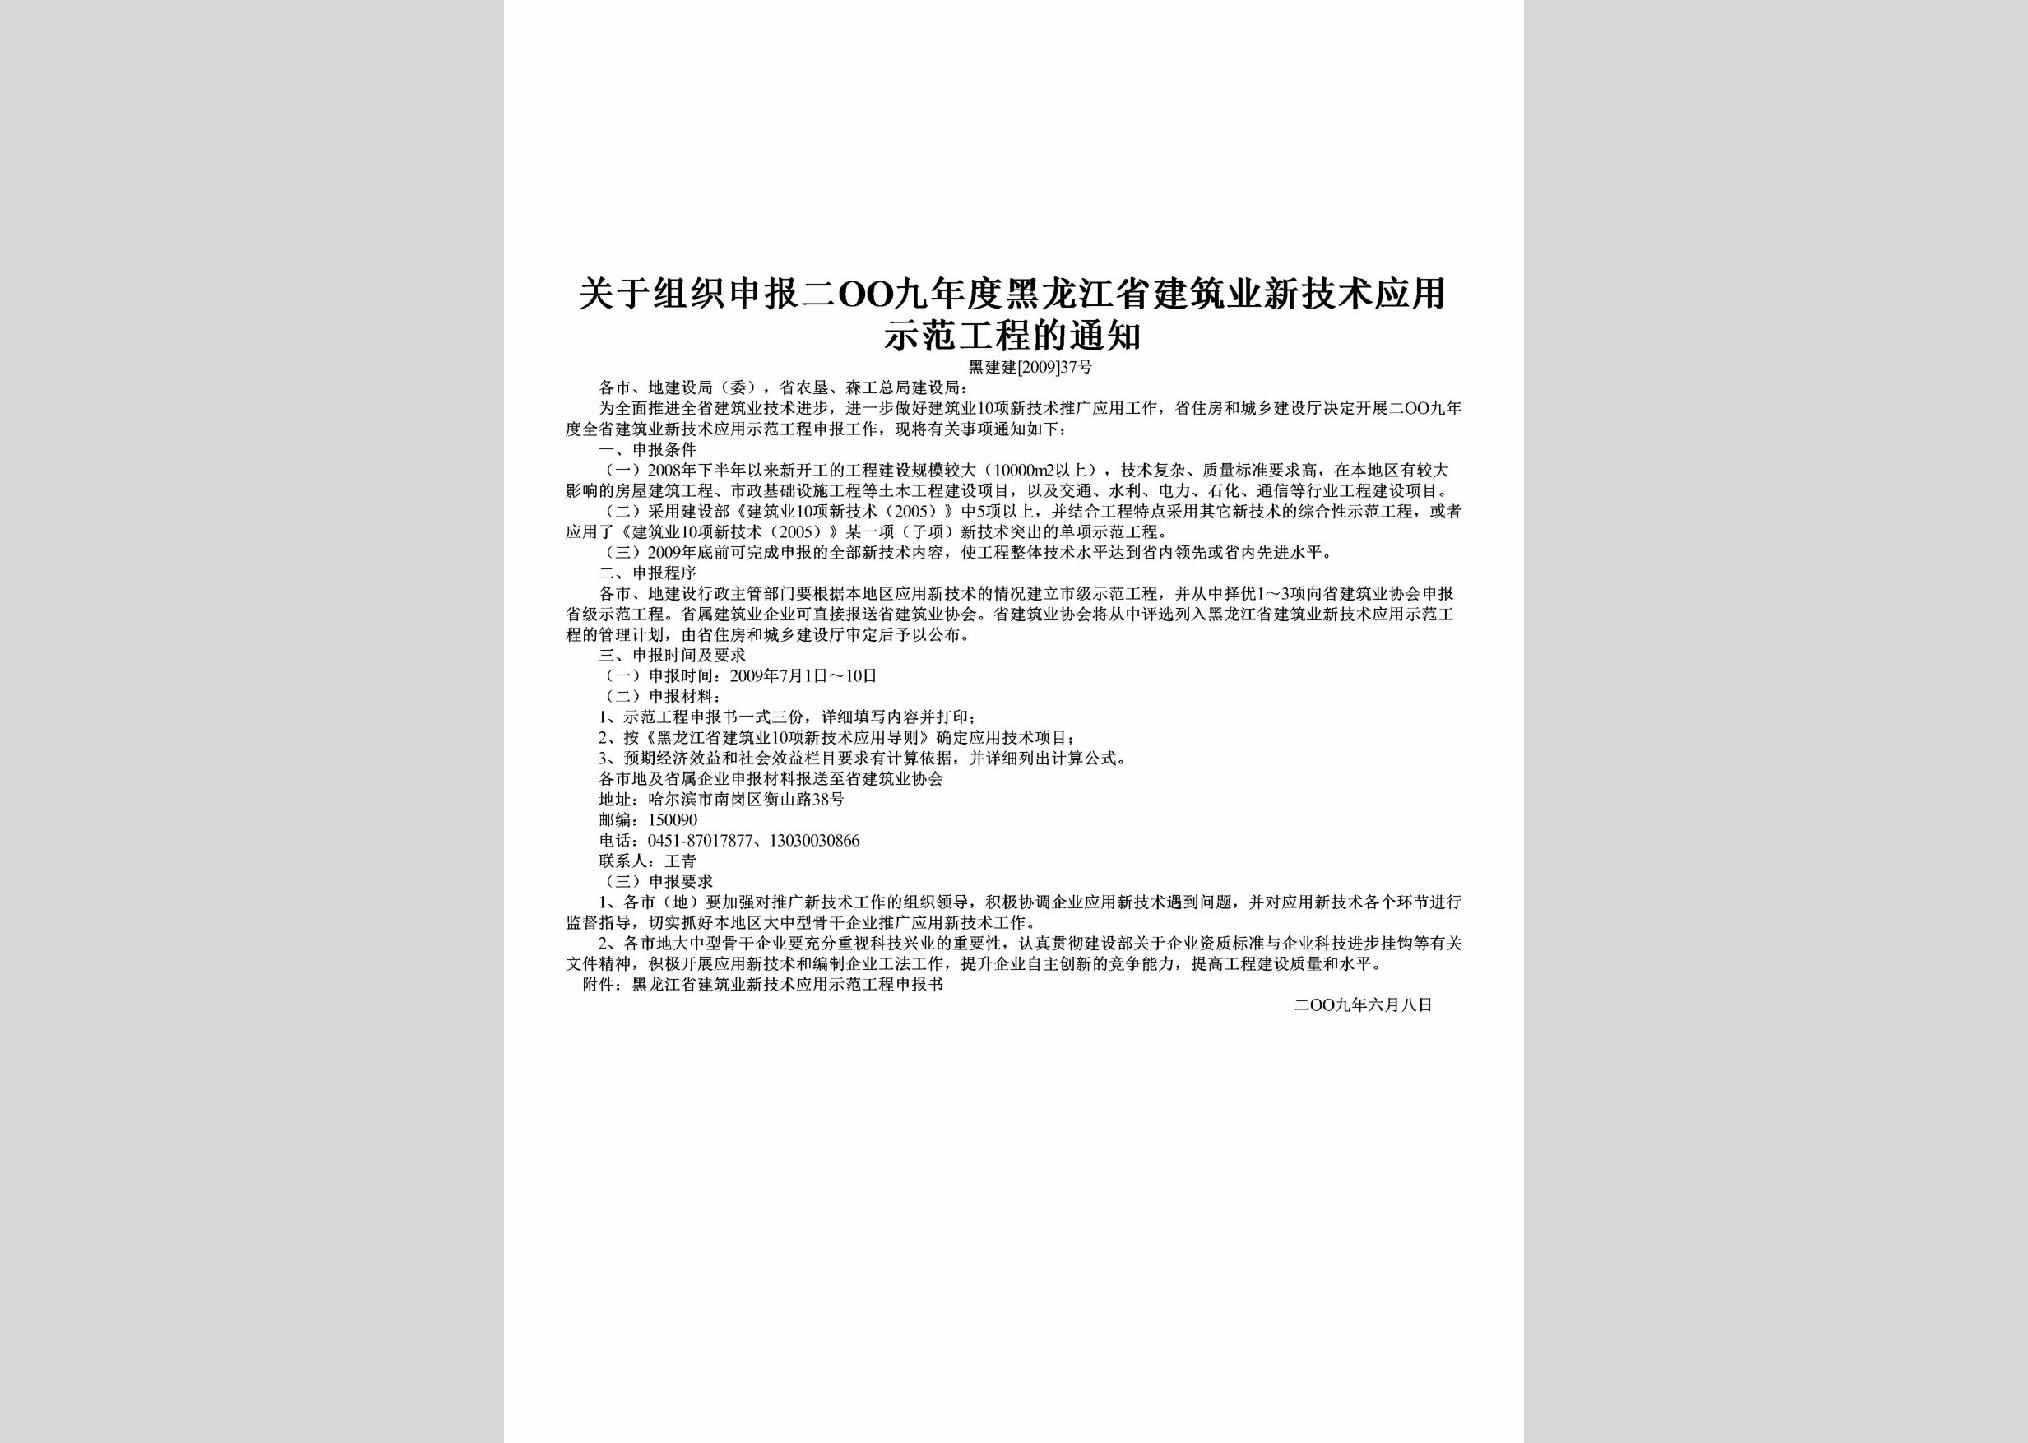 黑建建[2009]37号：关于组织申报二OO九年度黑龙江省建筑业新技术应用示范工程的通知